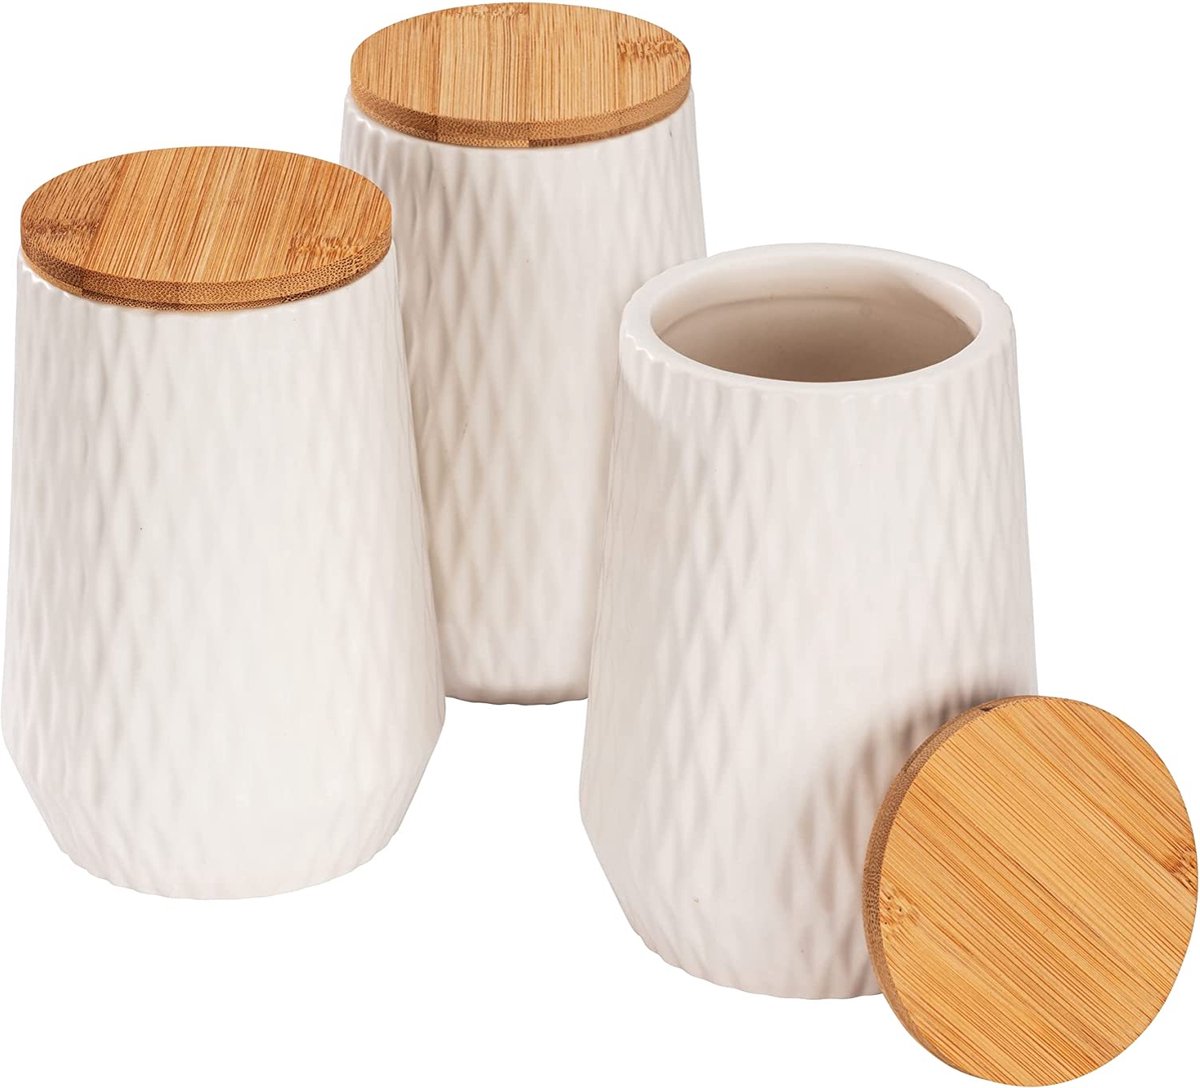 Voorraadpot Diamond, moderne set van 3 keramische potten met bamboe deksel en elegante diamantstructuur voor in de keuken of elders in huis, elk met een inhoud van 0,6 liter, wit/bruin